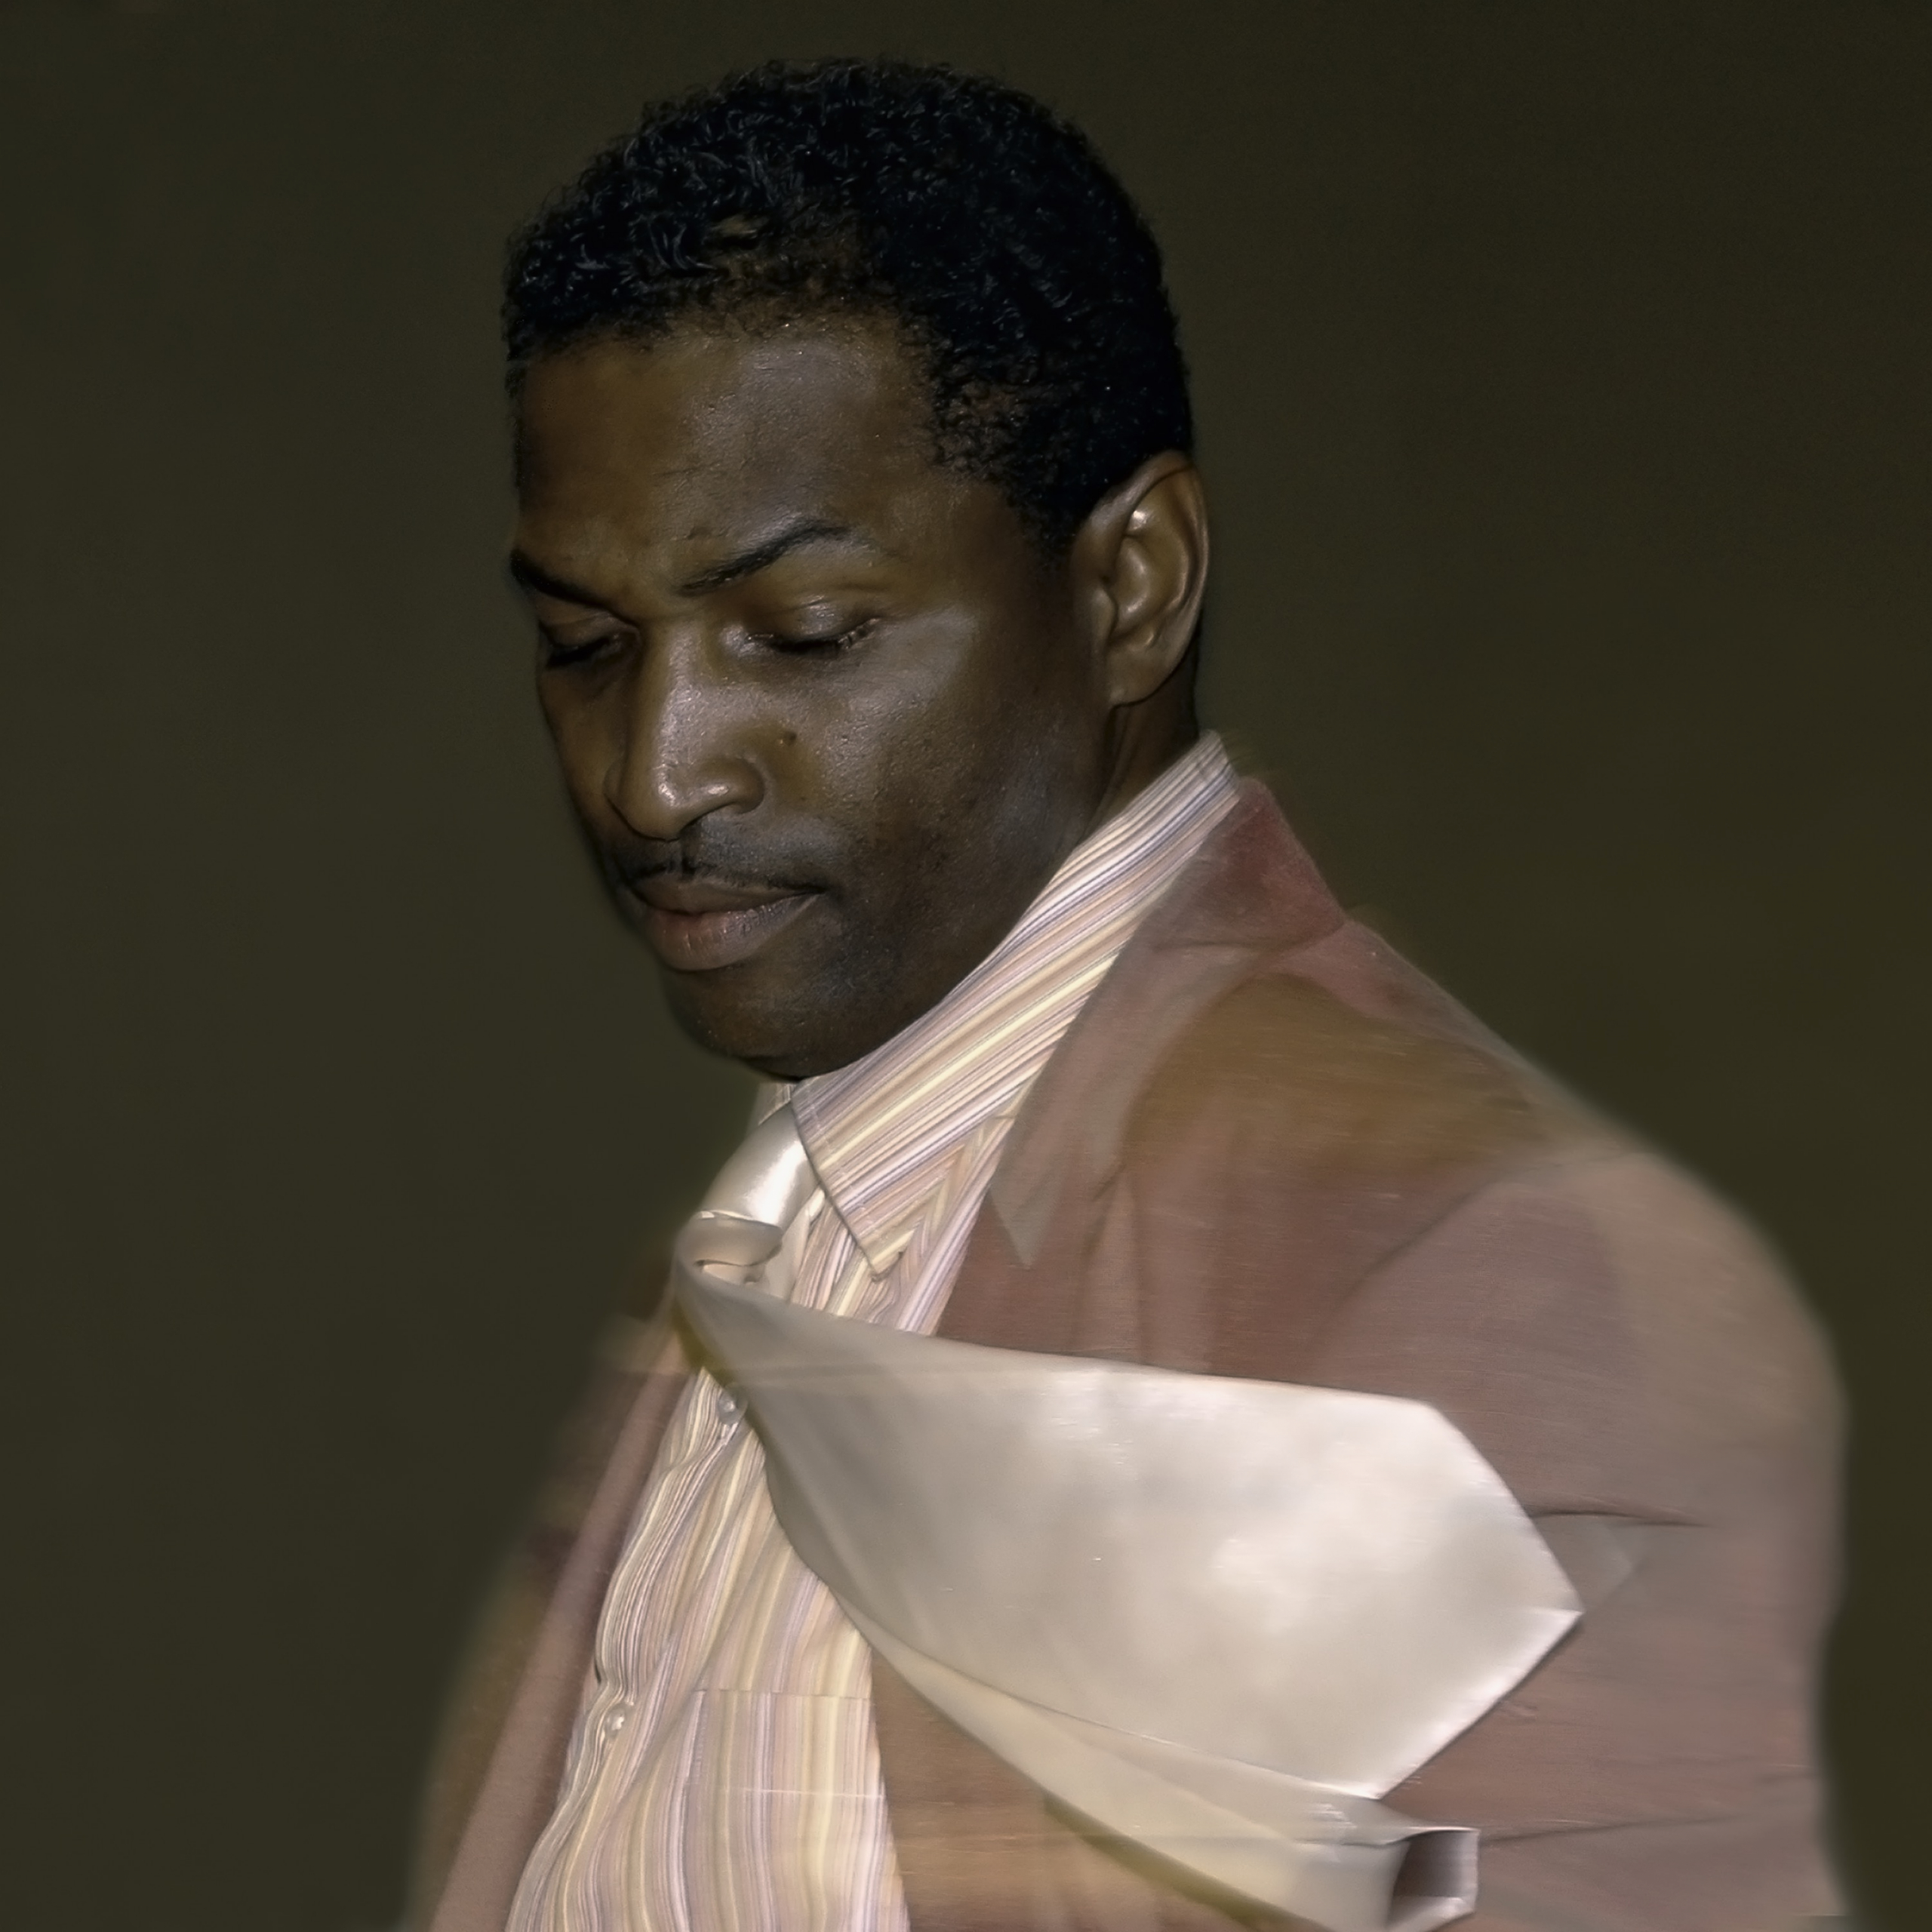 Cecil McDonald jr,Spinning Black Man, 2013